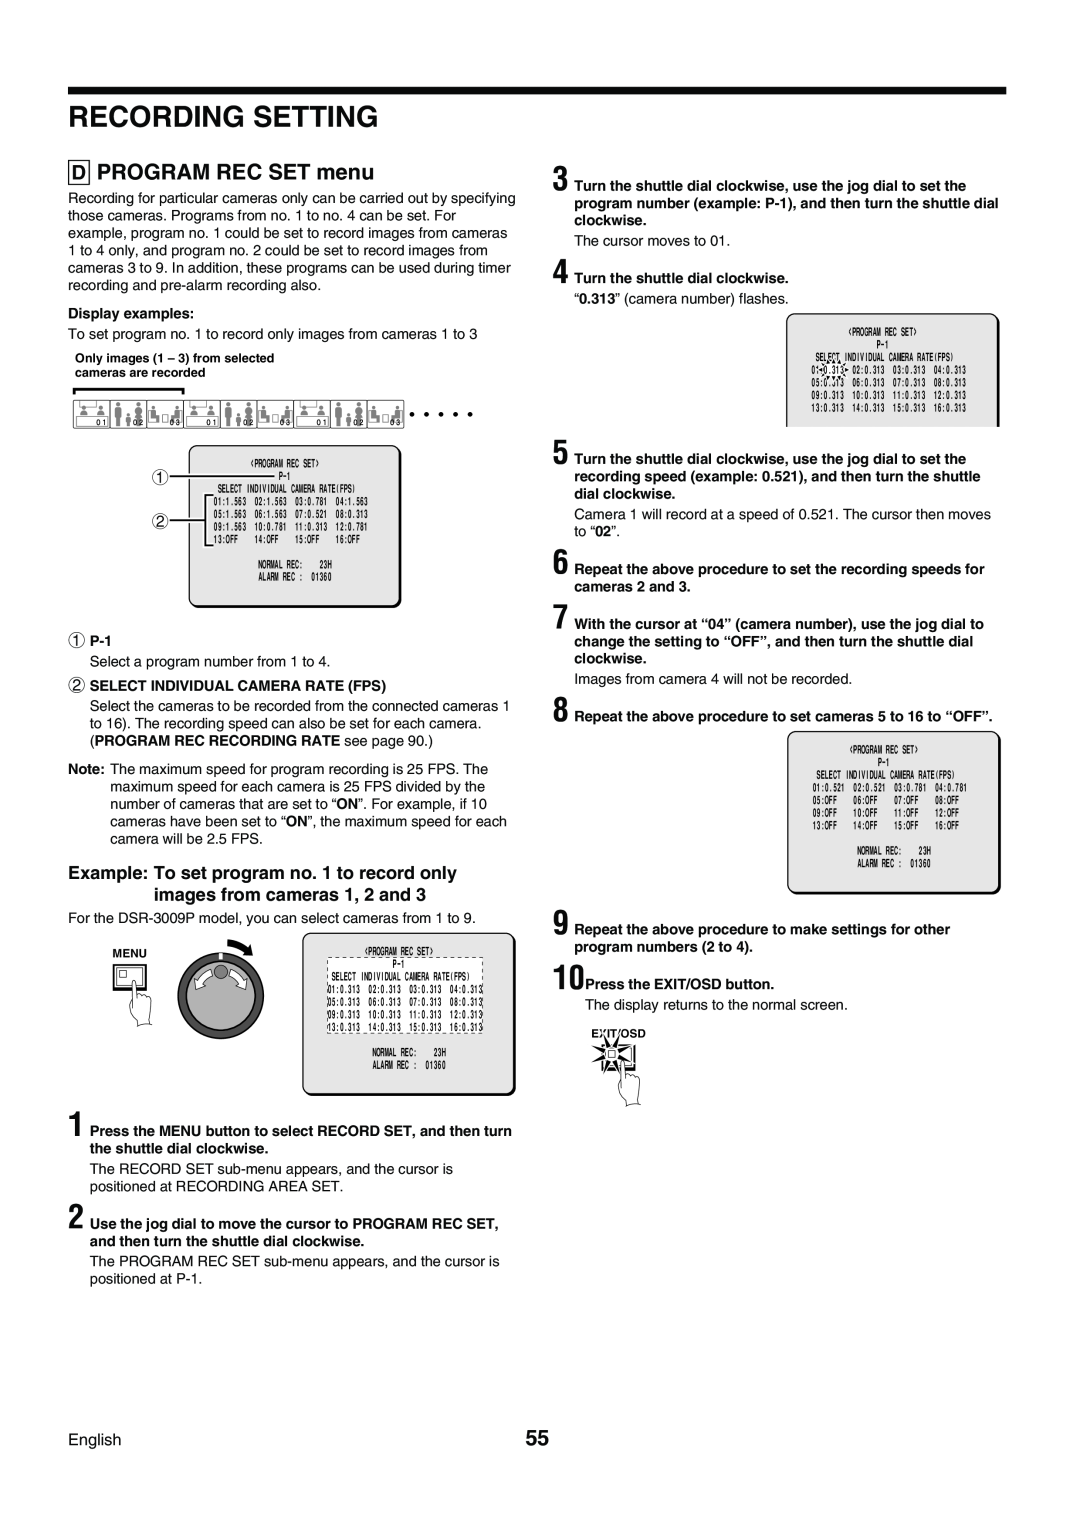 Sanyo DSR-3009P instruction manual D PROGRAM REC SET menu, Recording Setting 